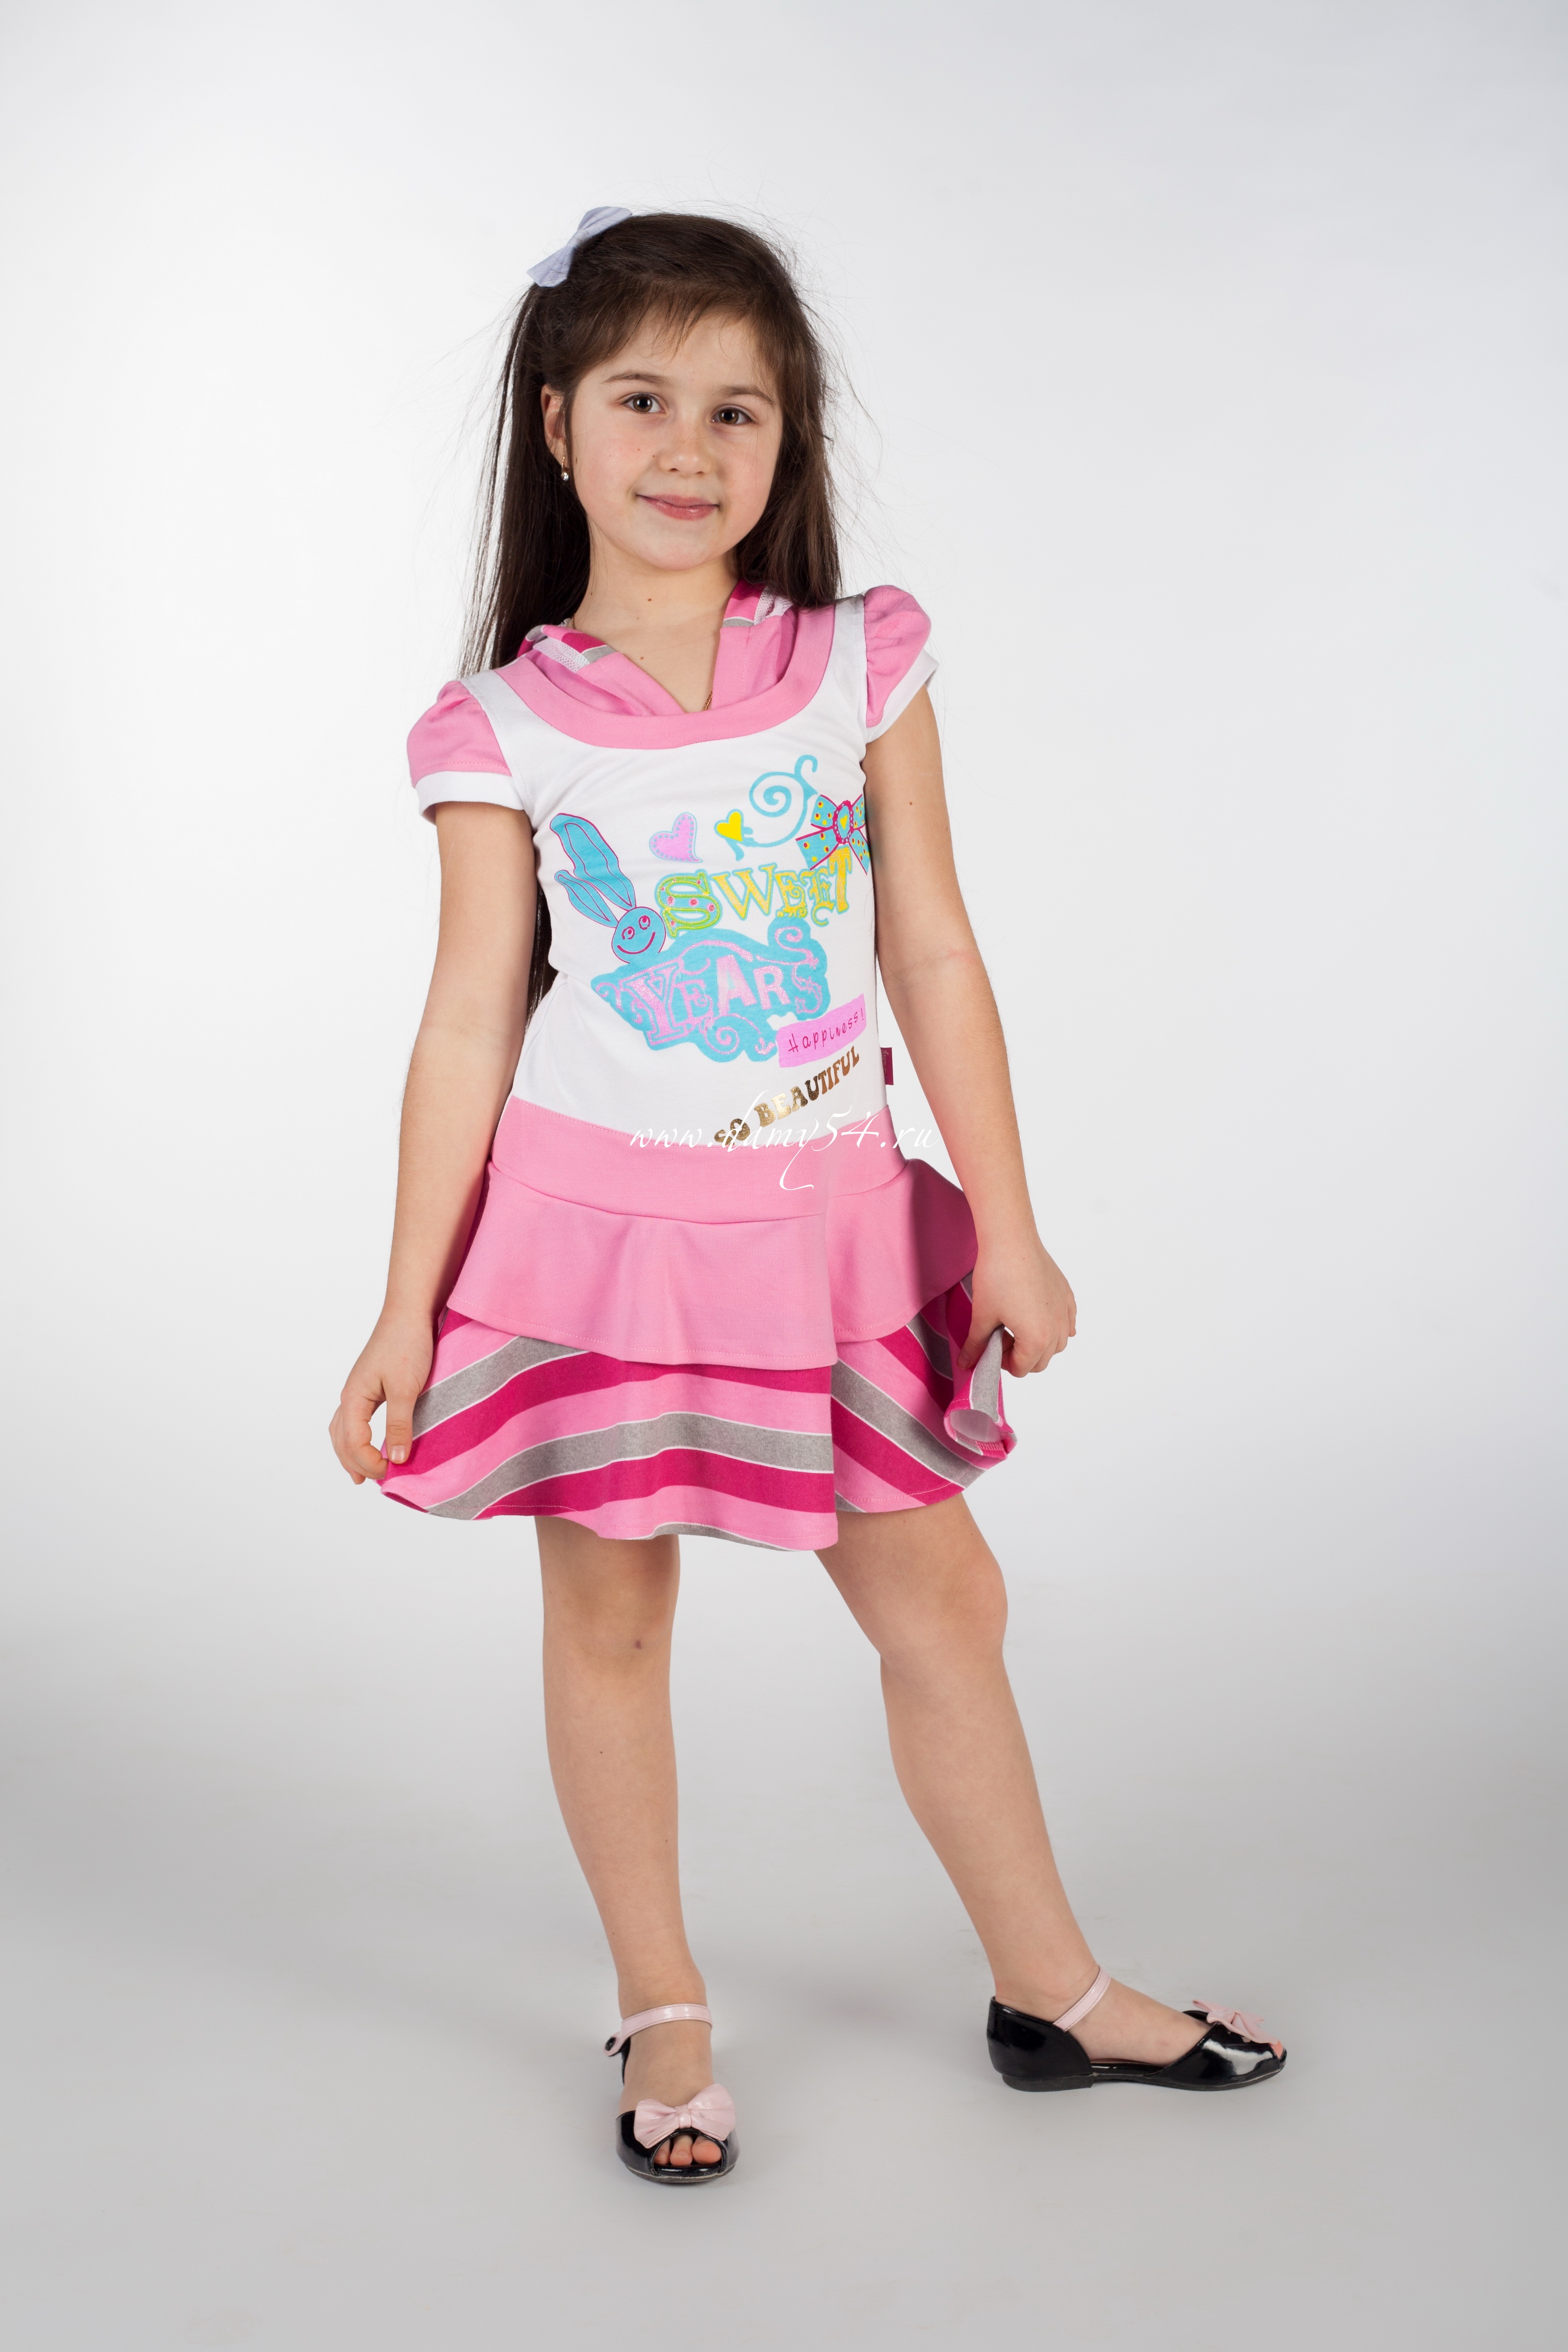 Дами м. Damy-m детская одежда. Платье для девочки damy-m KV-018. Сарафан damy-m. Damy-m блузка.